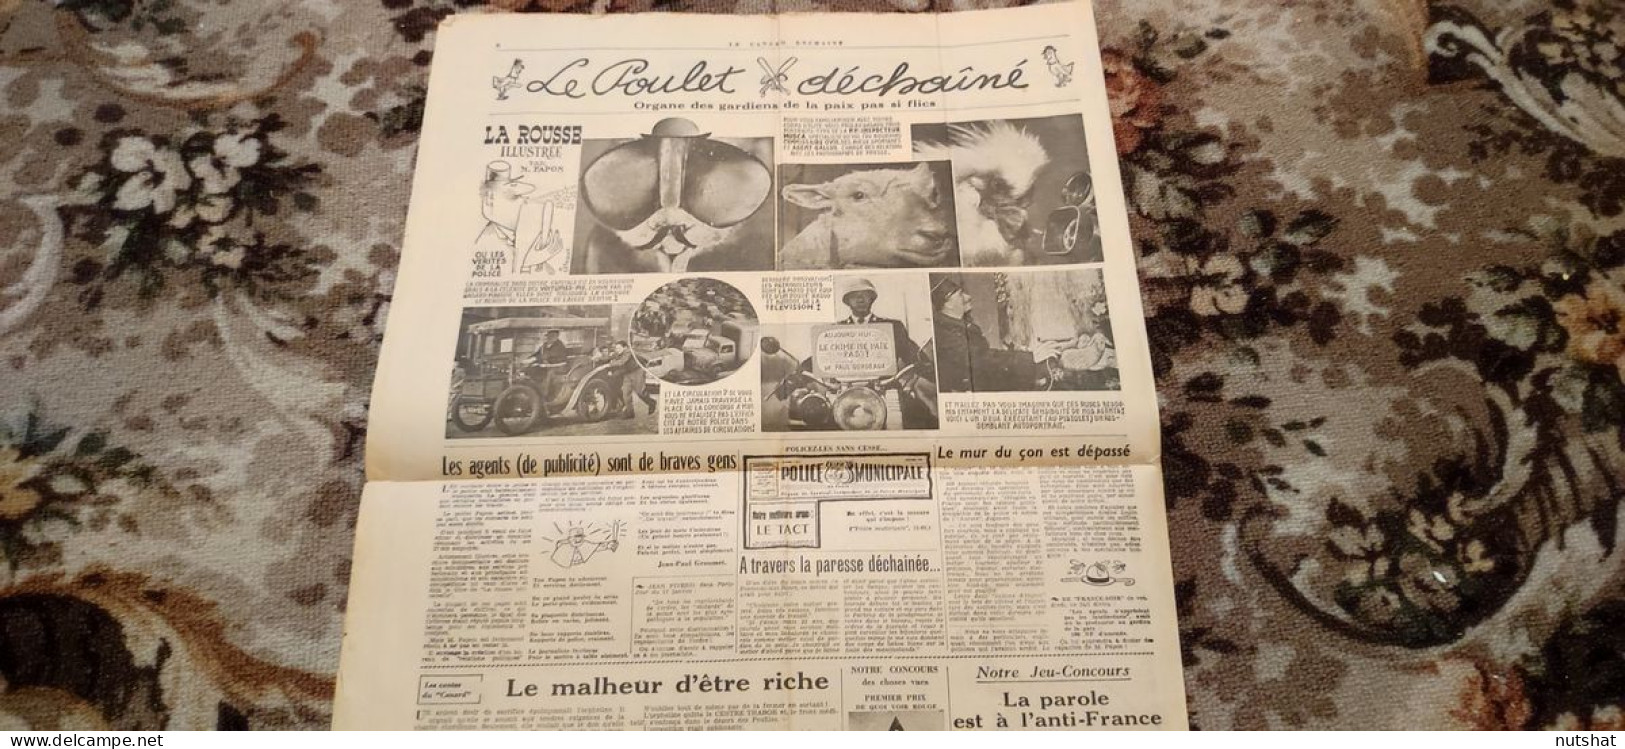 CANARD ENCHAINE 2101 25.01.1961 Le POULET DECHAINE ORGANE Des GARDIENS De PAIX - Politik